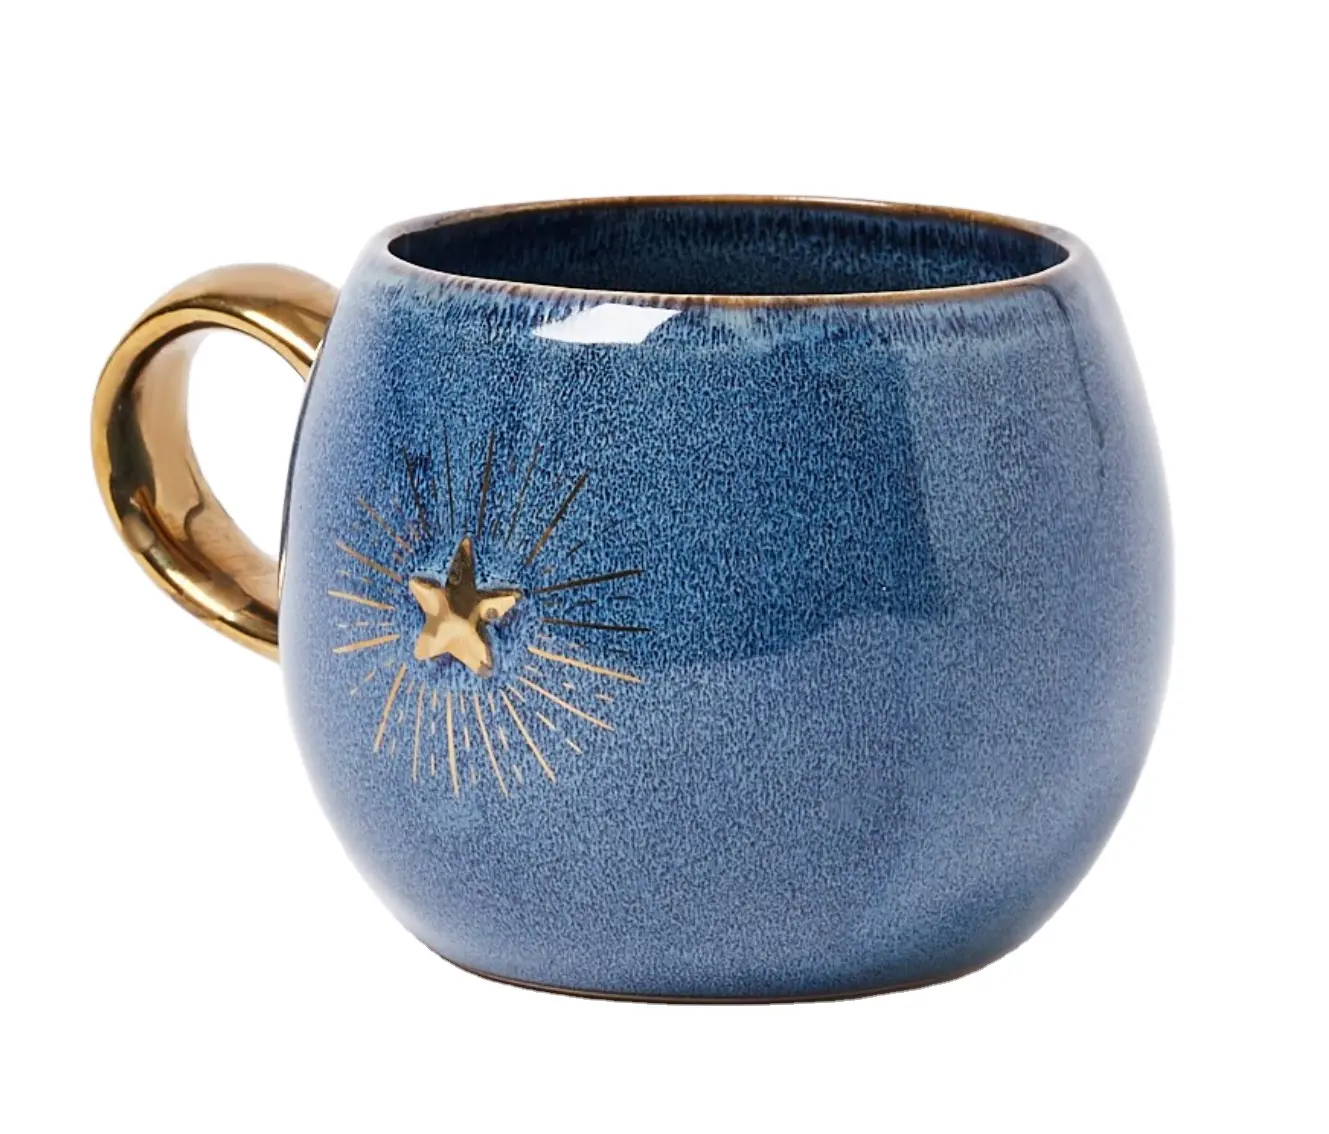 Ide hadiah terbaru pola Cameo bintang bulan lebah keramik cangkir air perubahan keramik cangkir kopi peralatan dapur piring makan malam c